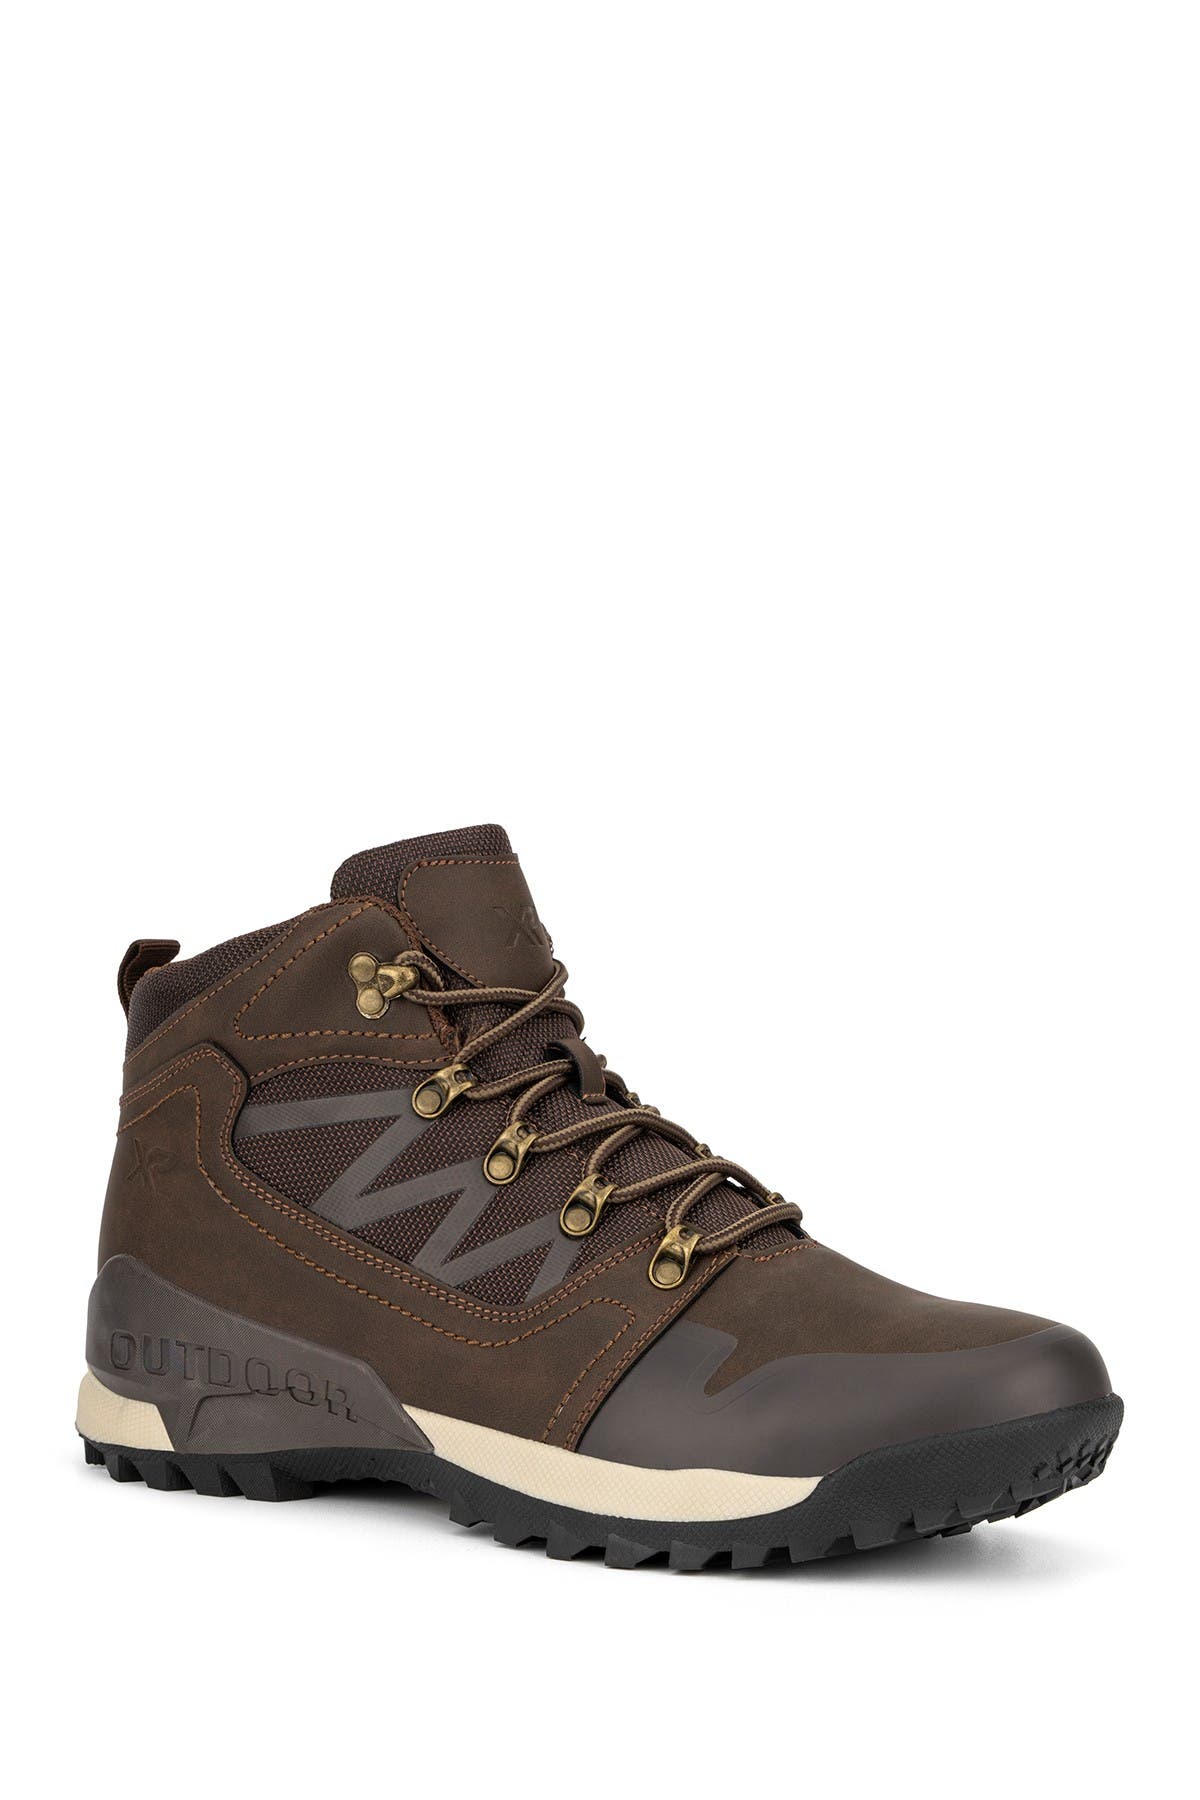 X-ray Men's Footwear Voltex Sneaker Men's Shoes In Brown | ModeSens